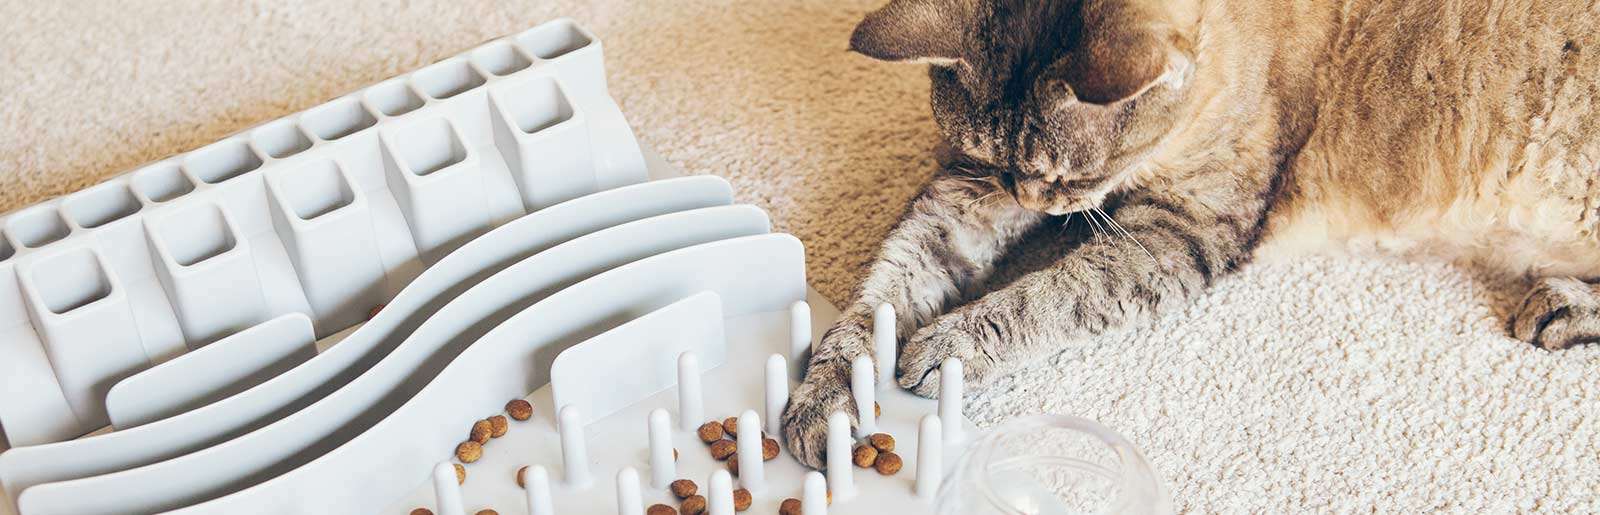 Activity Feeding bei Katzen: Katze mit Katzenfutter beschäftigen